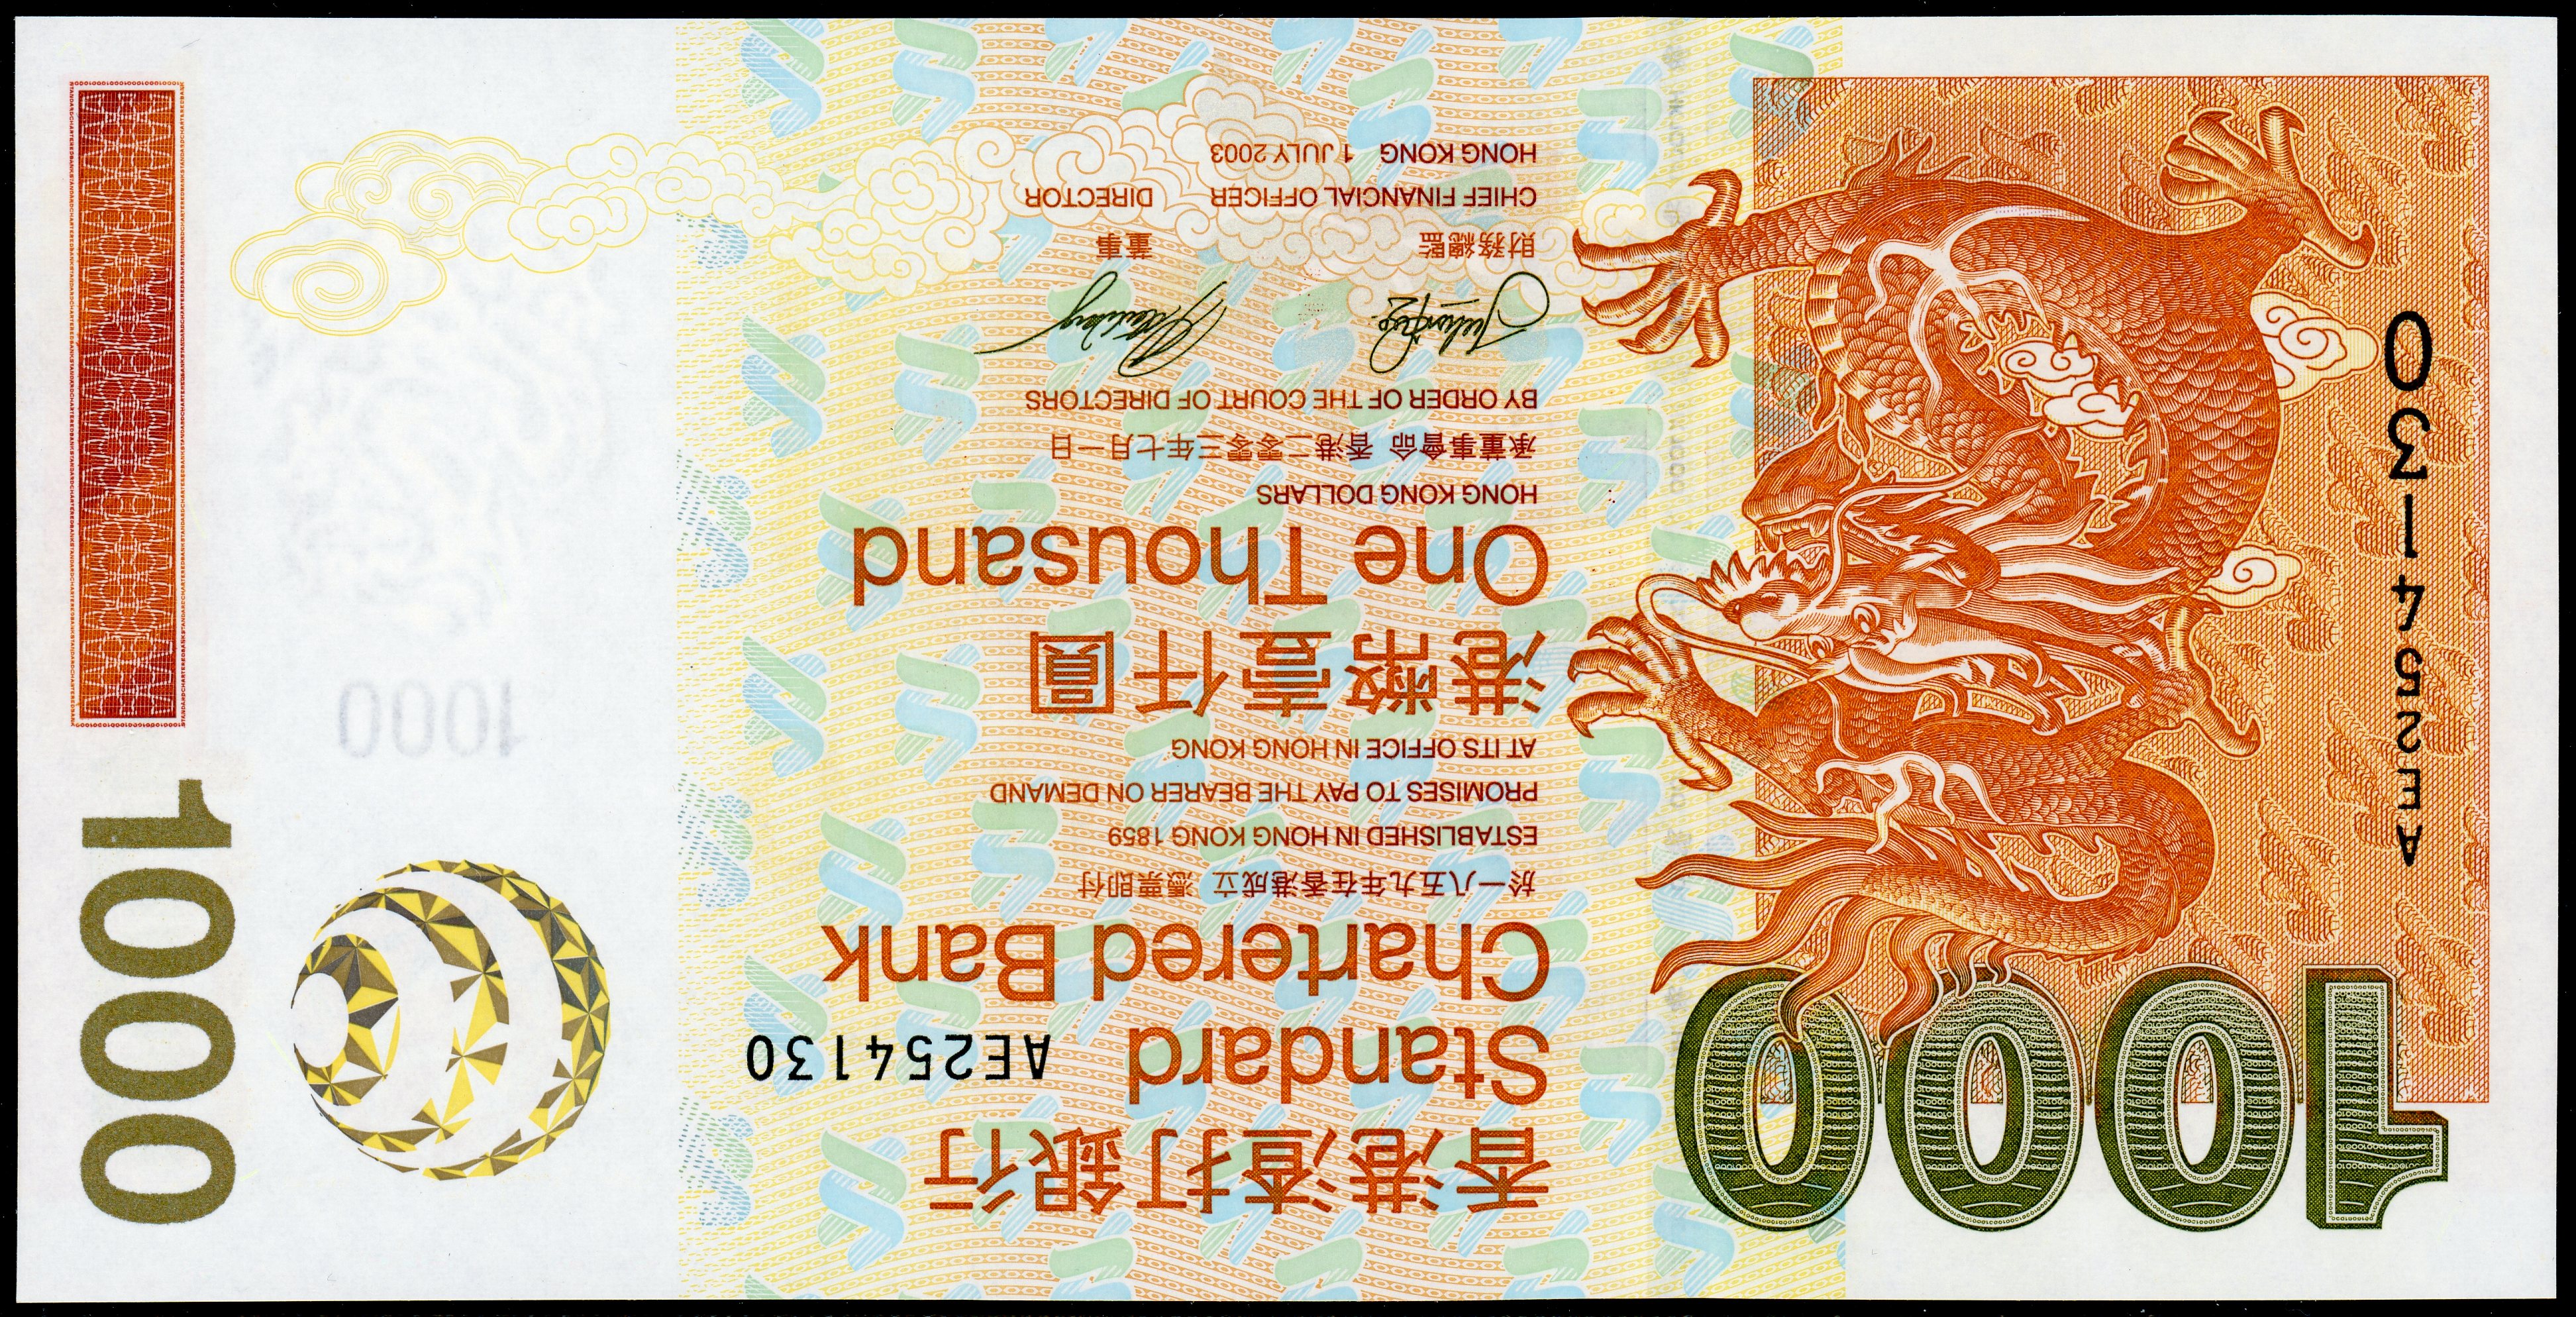 再×14入荷 1977年 チャータードバンク 香港 100 ドル紙幣 | www